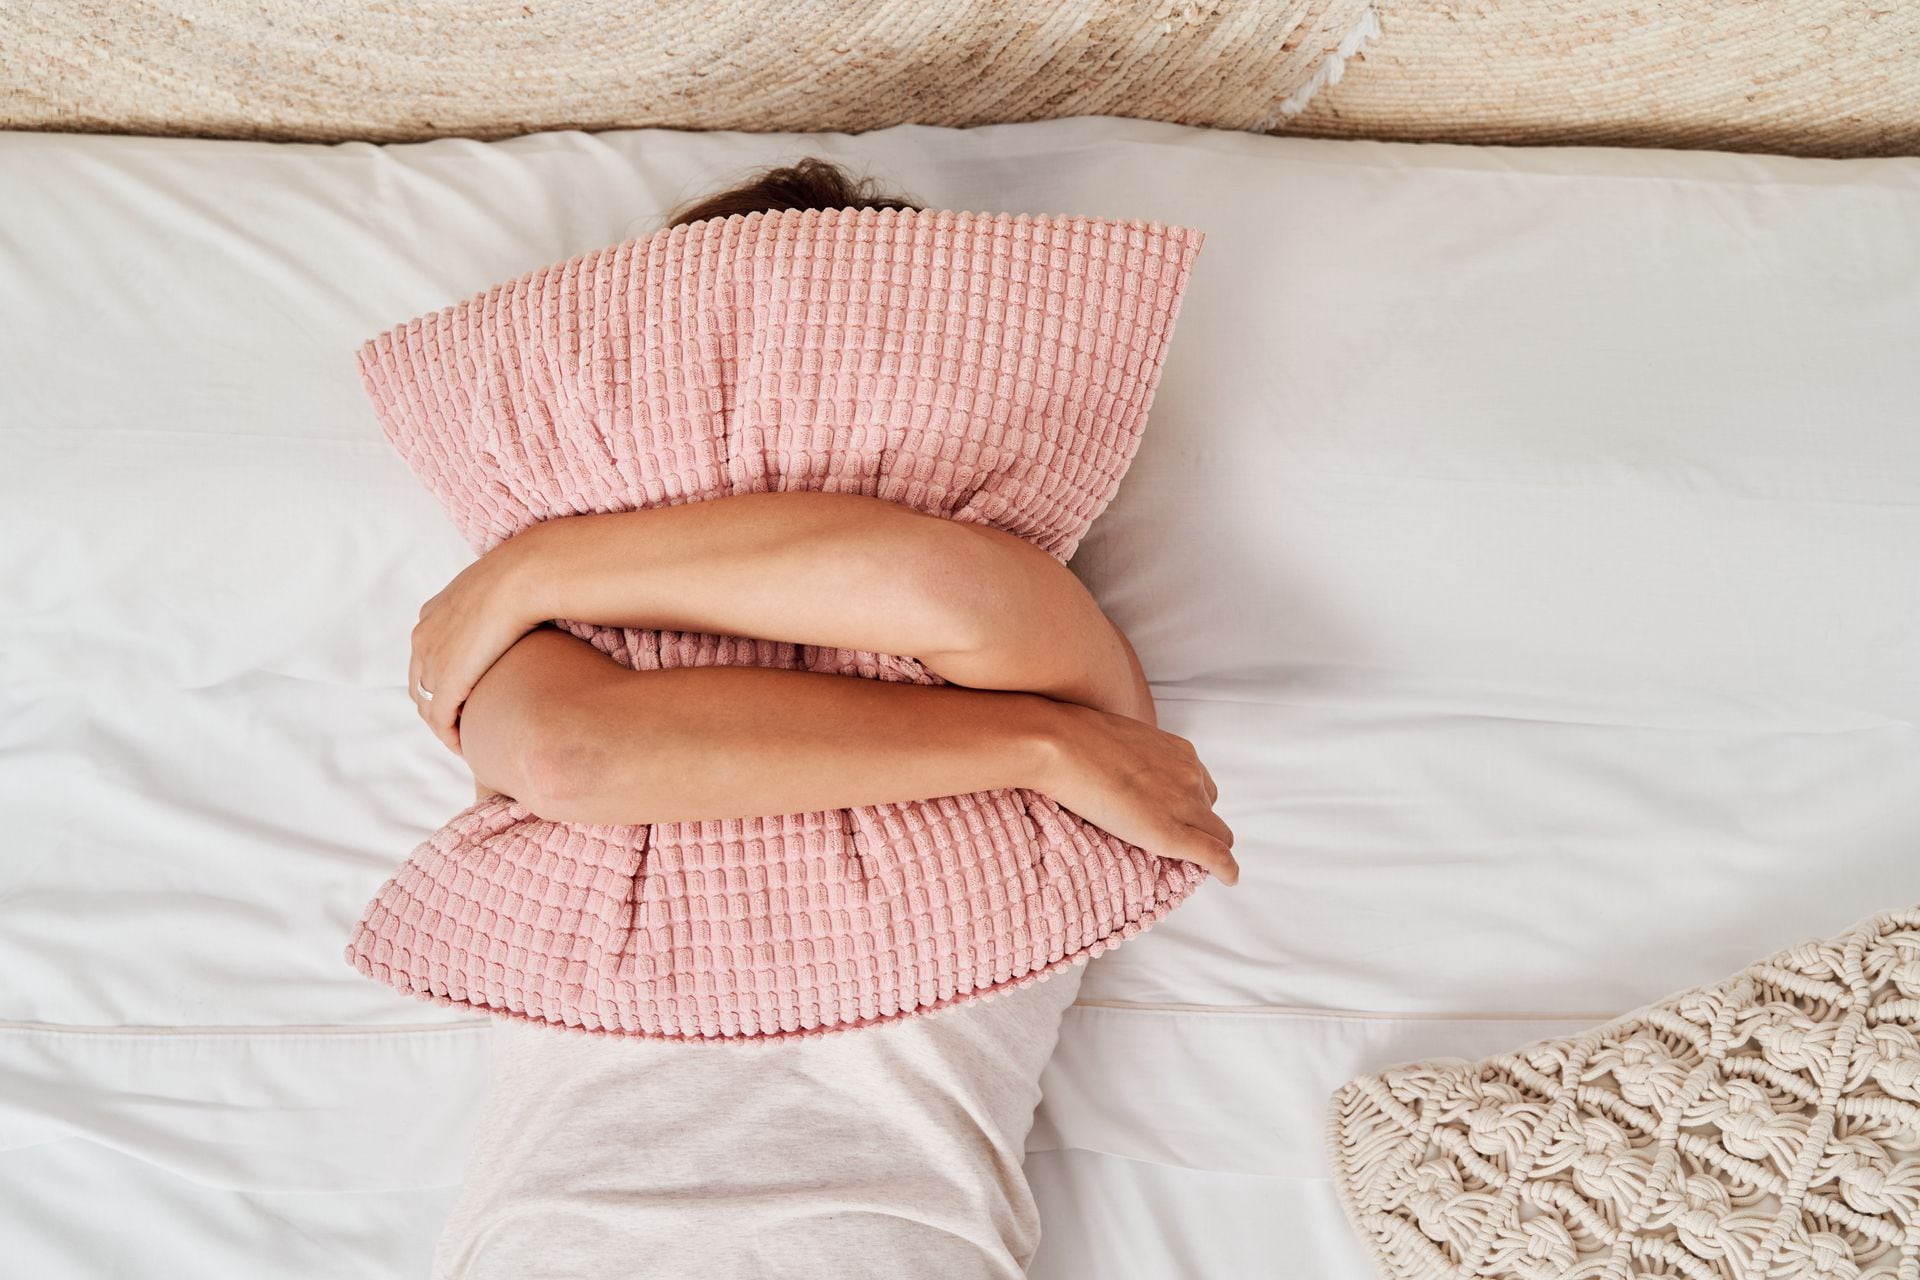 Una teoría destacada sostiene que las interrupciones en el sueño a causa del calor podrían agravar algunos síntomas de salud mental